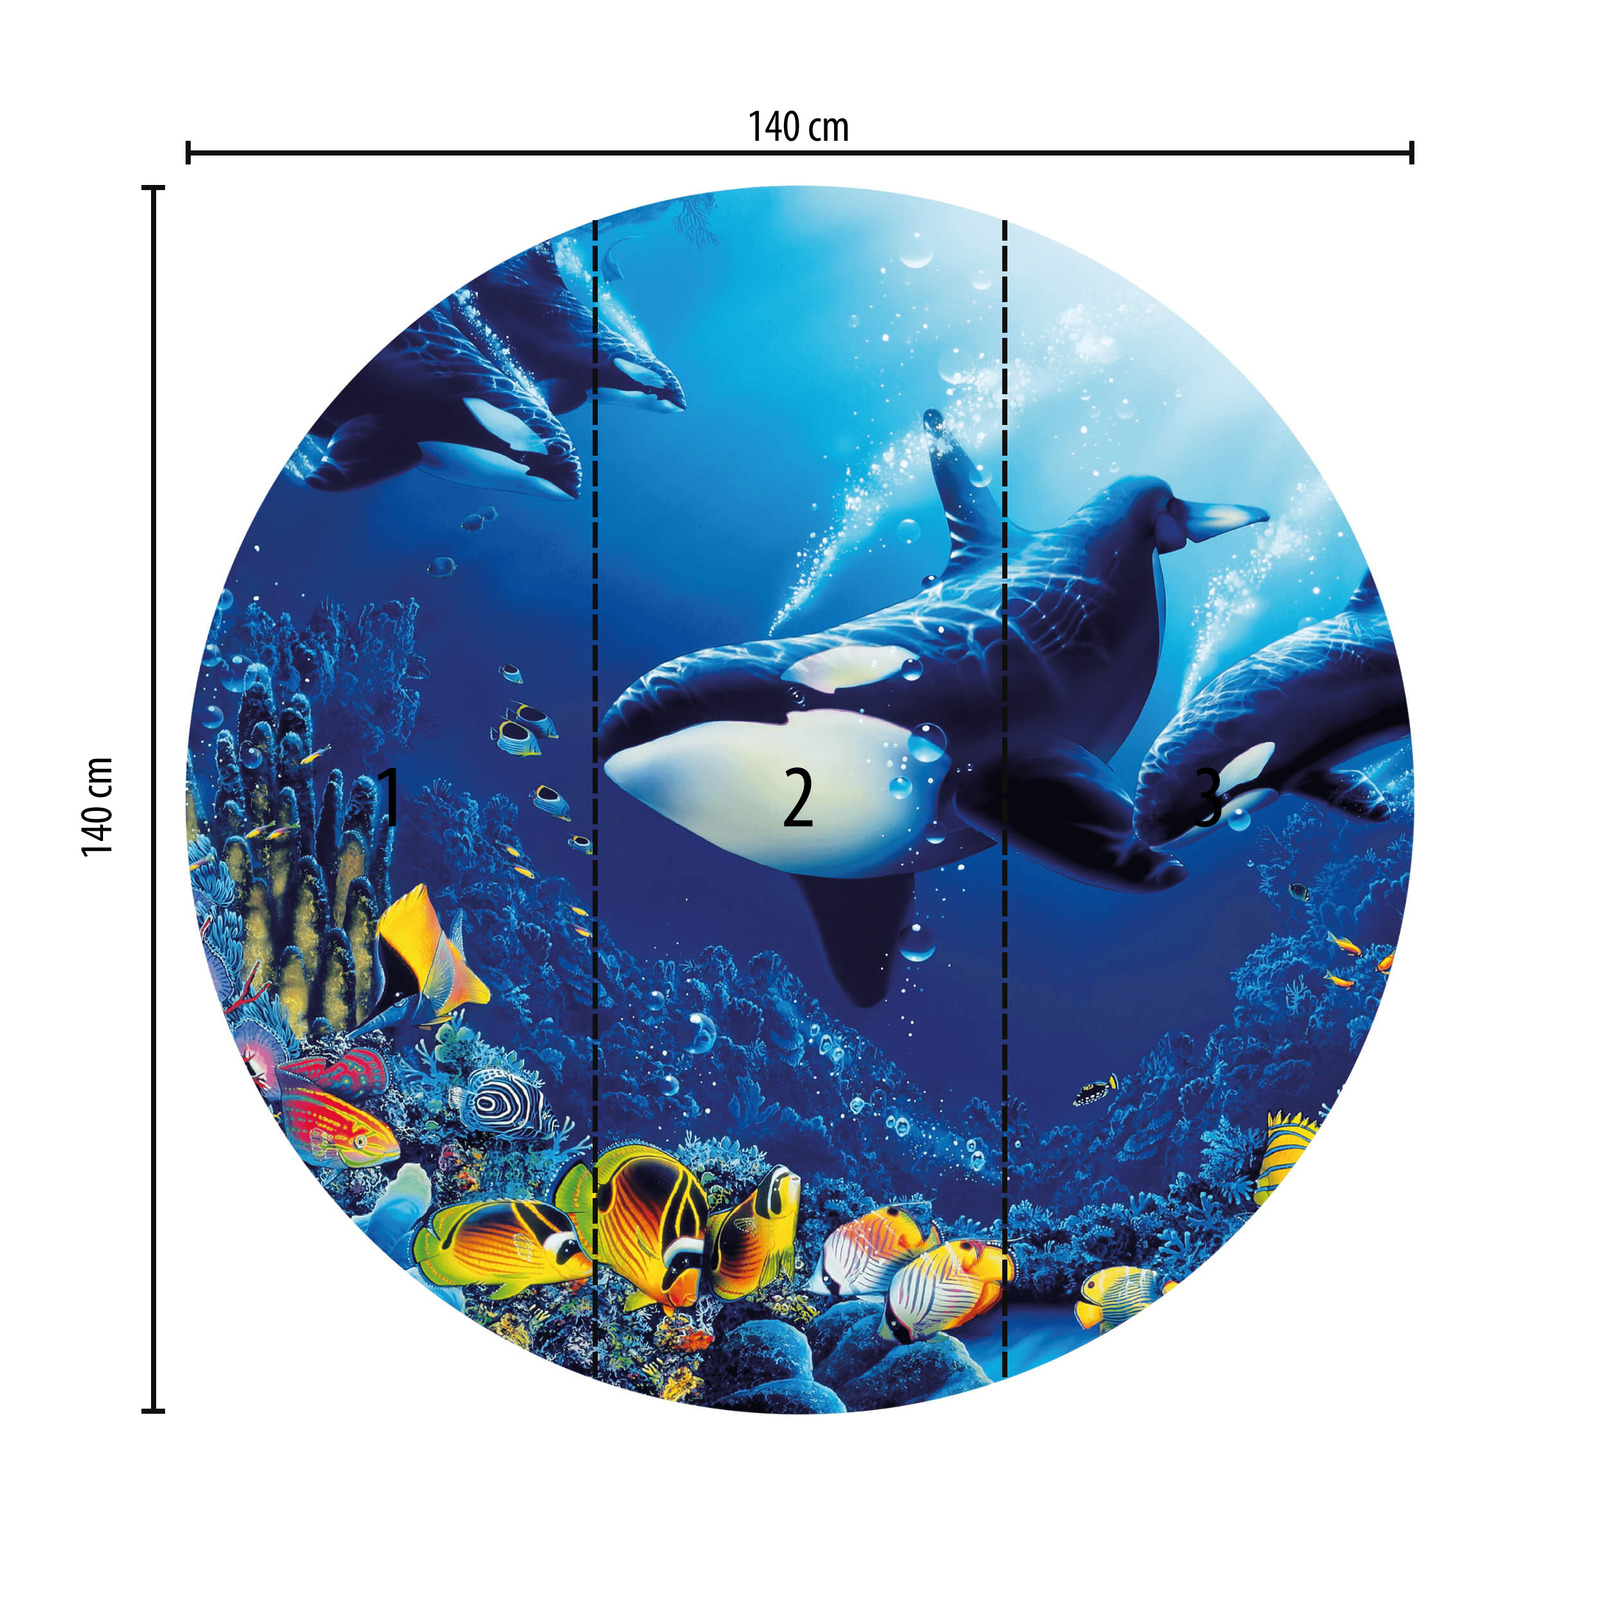             Fondo de pantalla redondo con el mundo submarino y las ballenas
        